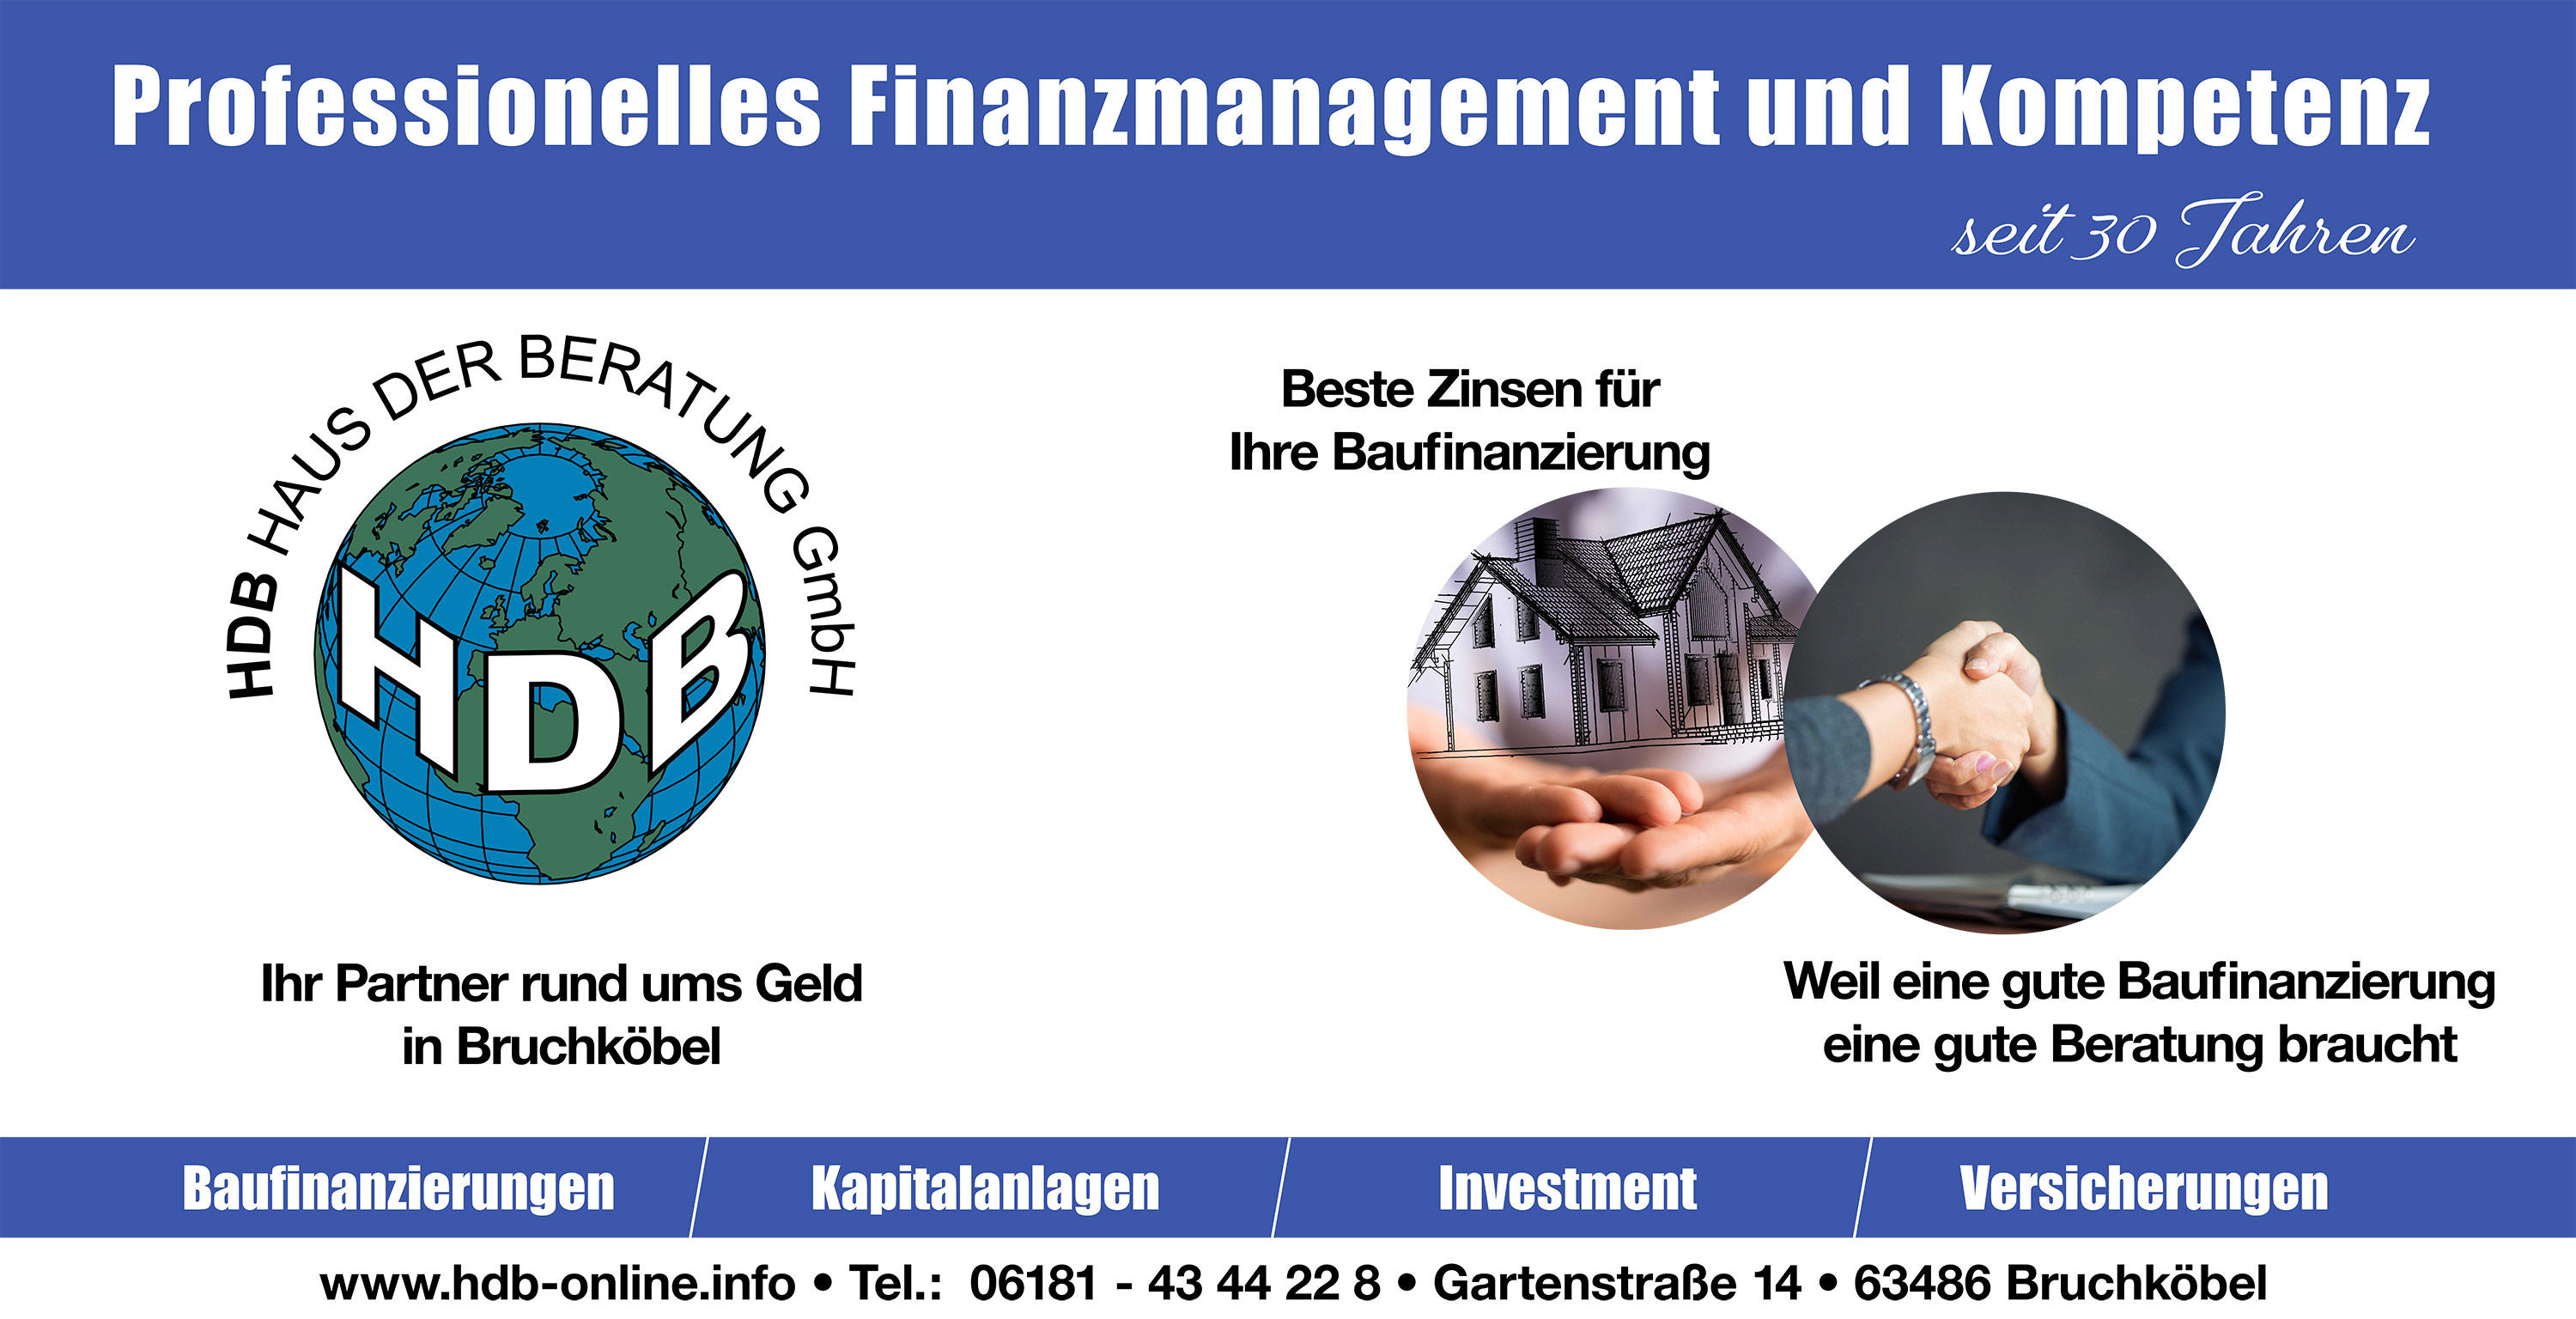 HDB – Haus der Beratung Versicherungsmakler GmbH: Professionelles Finanzmanagement und Kompetenz - Baufinanzierung - Kapitalanlagen - Investment - Versicherungen